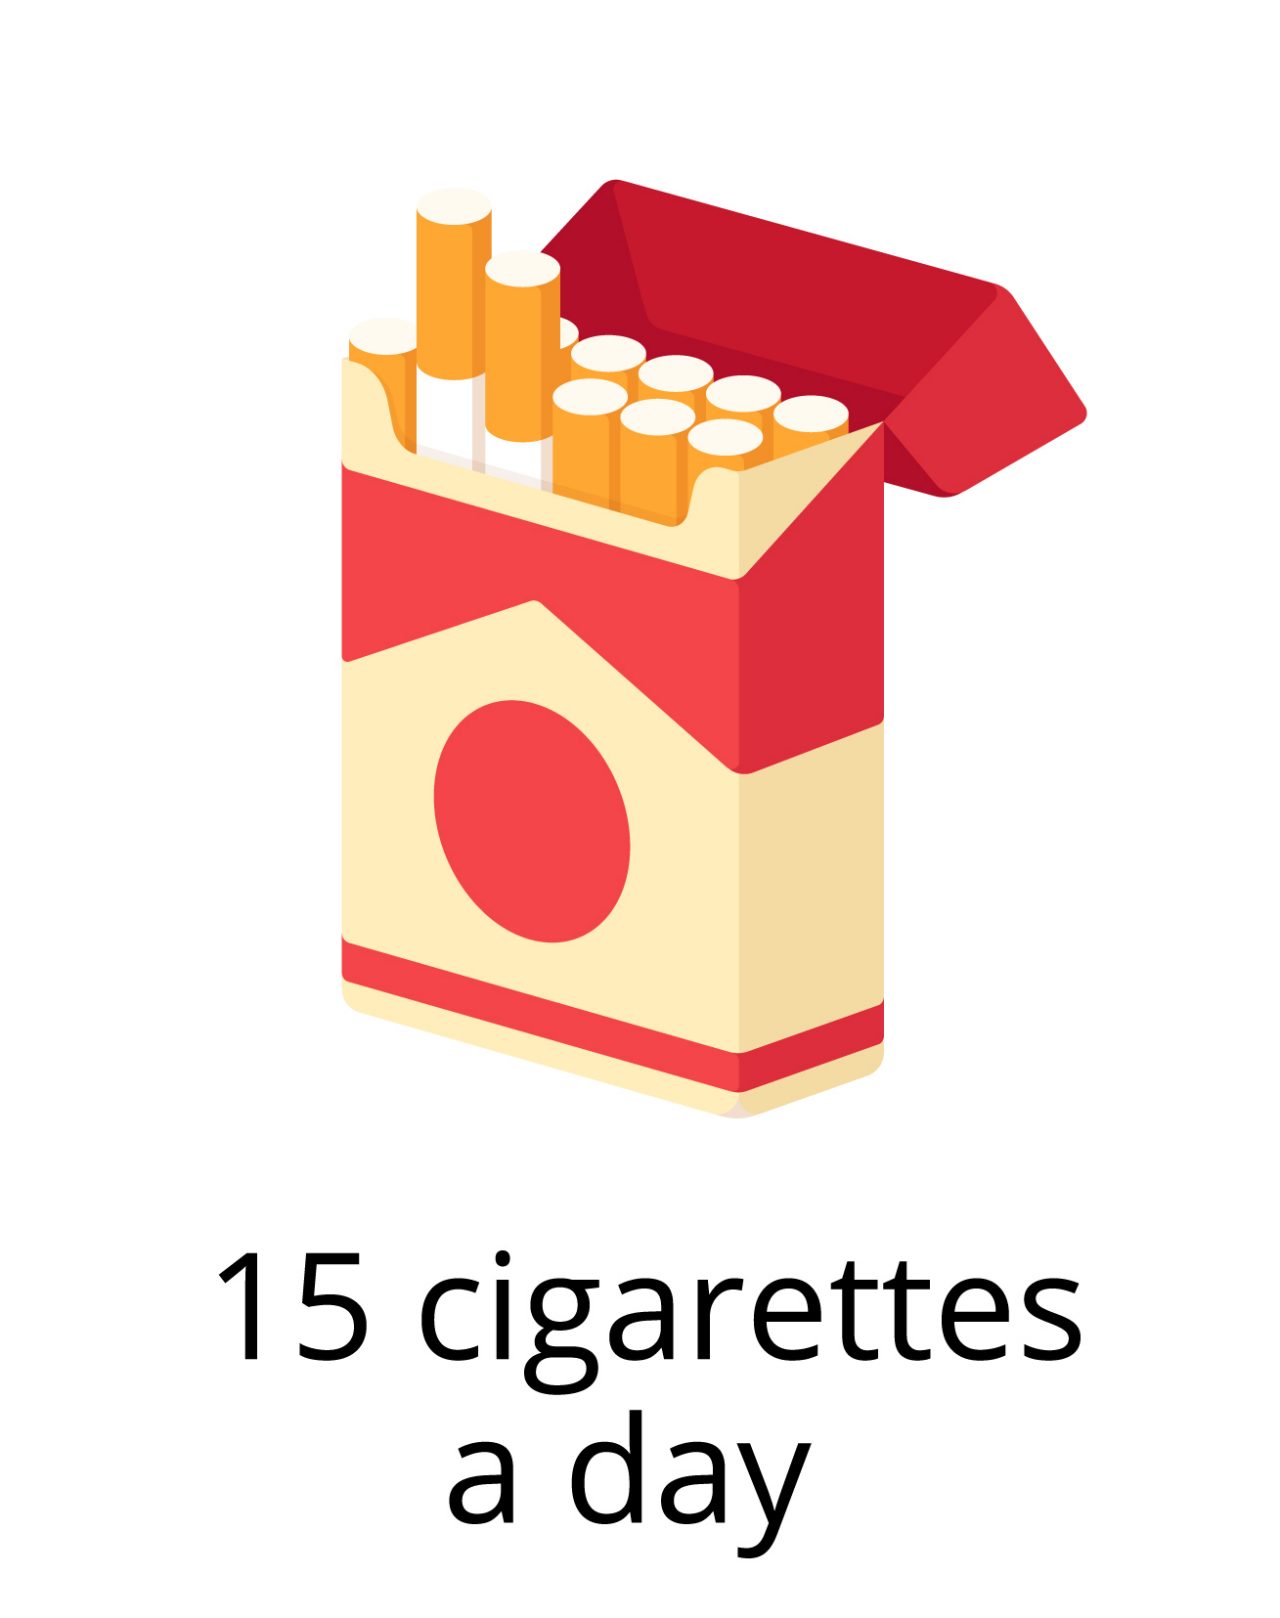 15 cigarettes a day